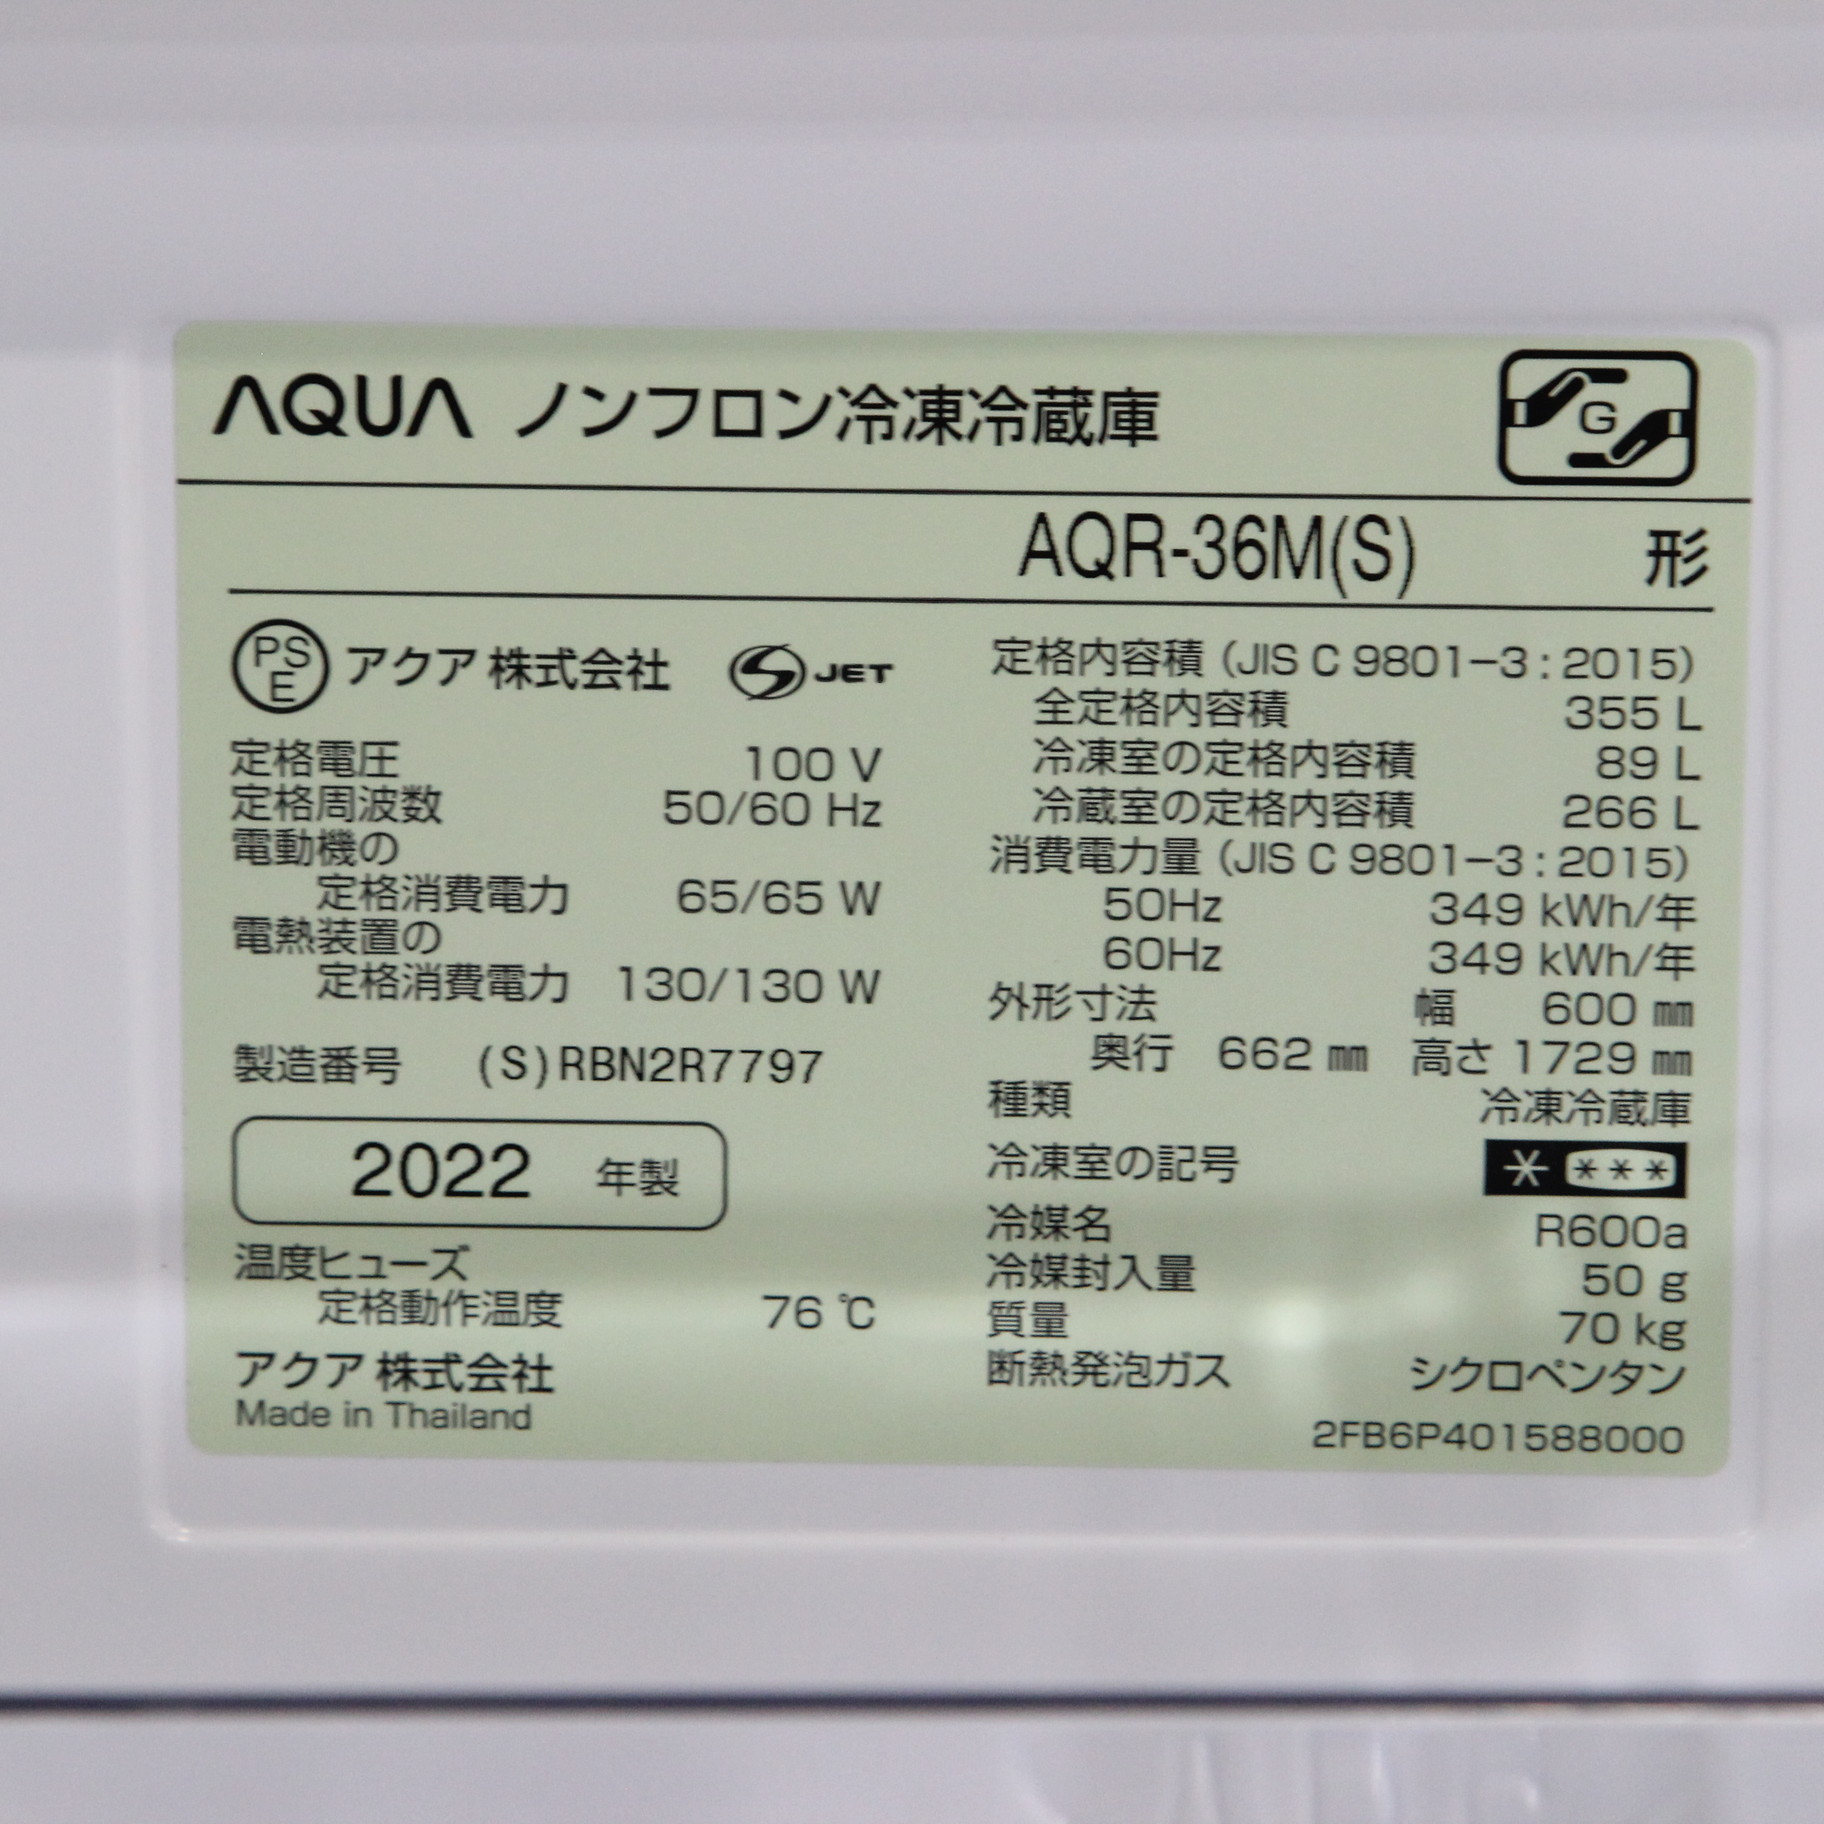 AQUA AQR-36M(W) WHITE 2022年製 4ドア 冷凍冷蔵庫